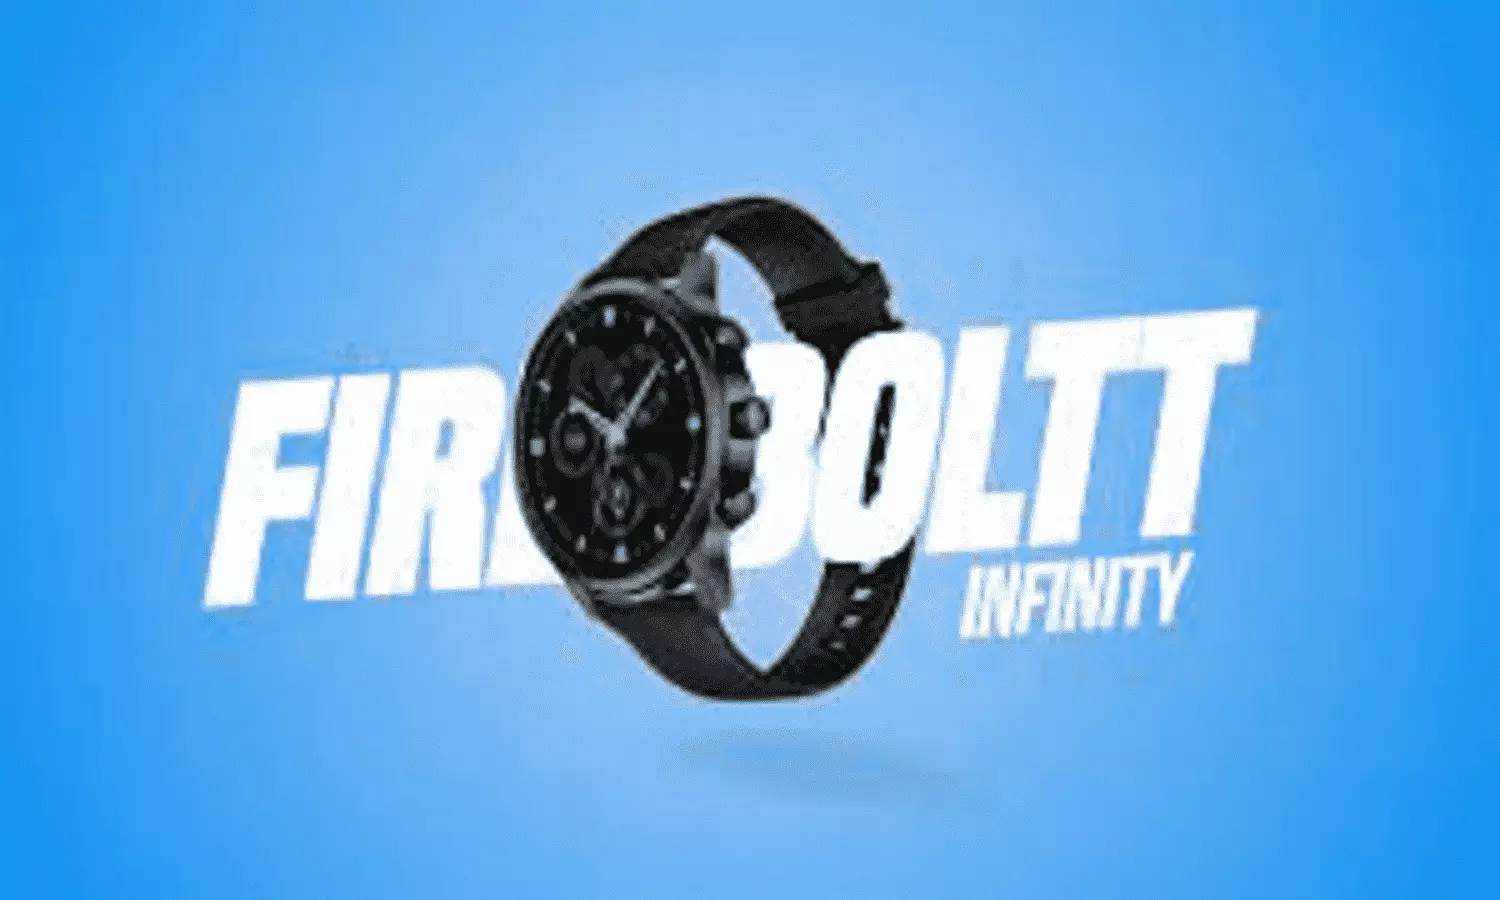 Fire Boltt Infinity Smartwatch Launch